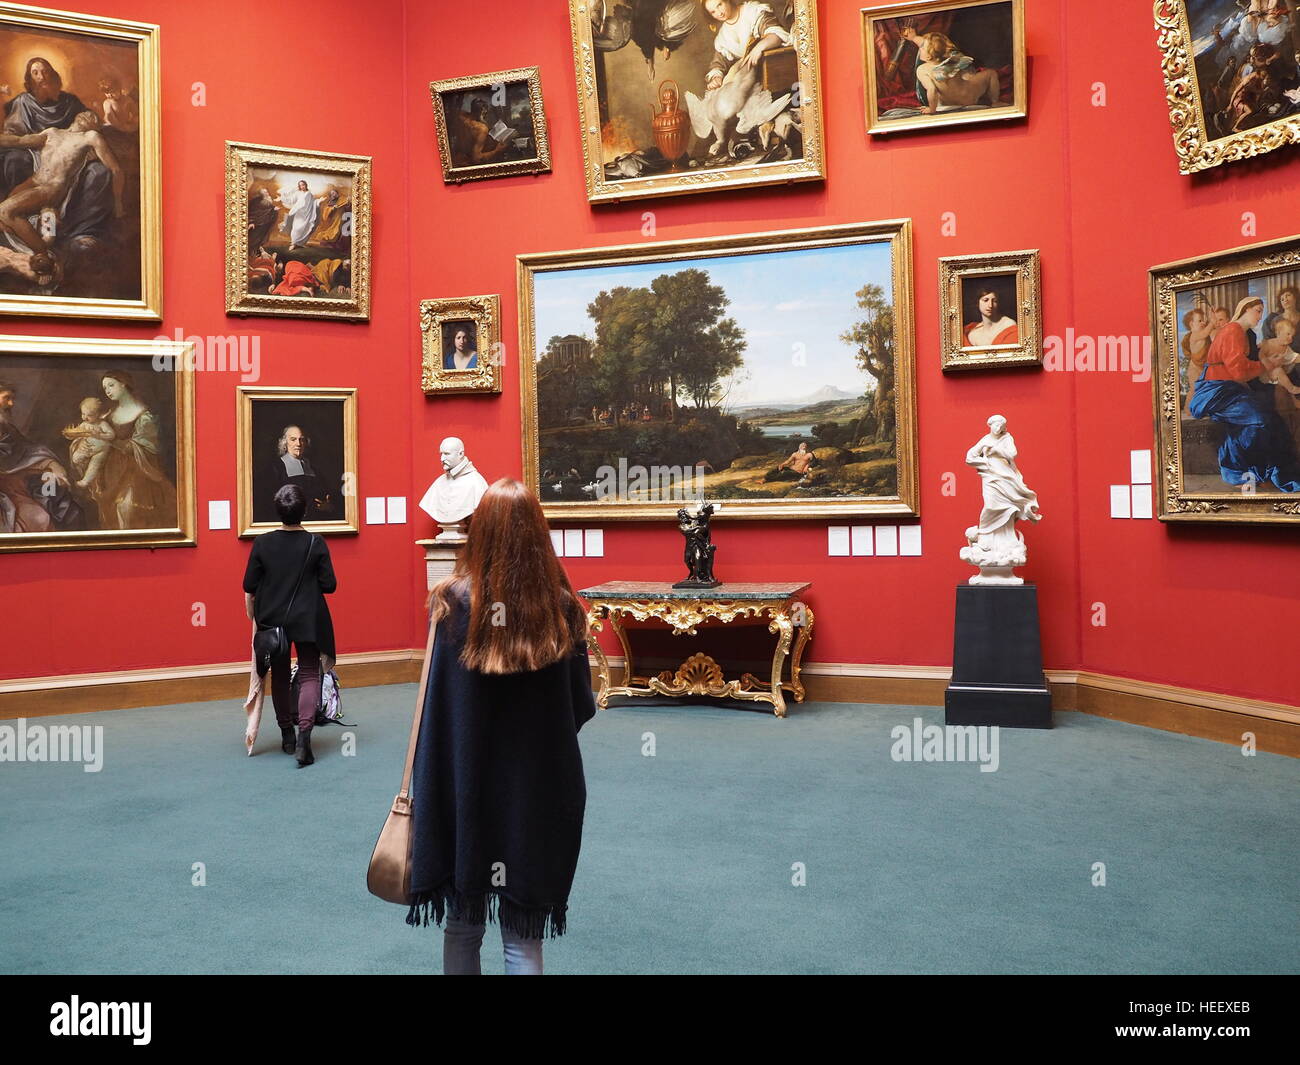 La Scottish National Gallery a une excellente collection, aménagées avec goût, et l'entrée est libre. Banque D'Images